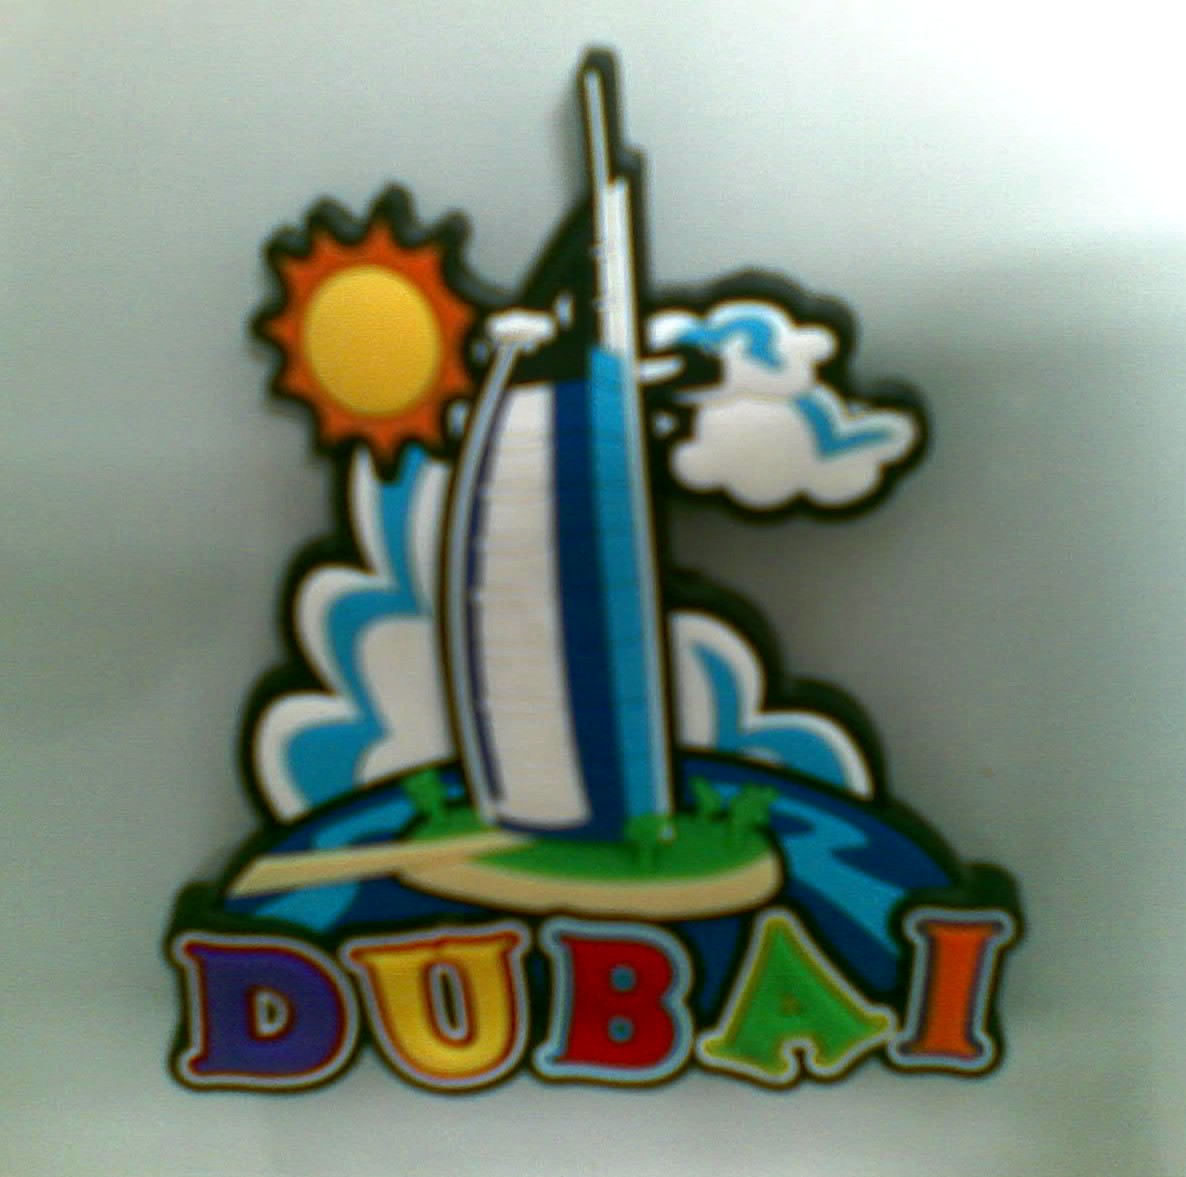 [FM+Dubai+UAE.jpg]